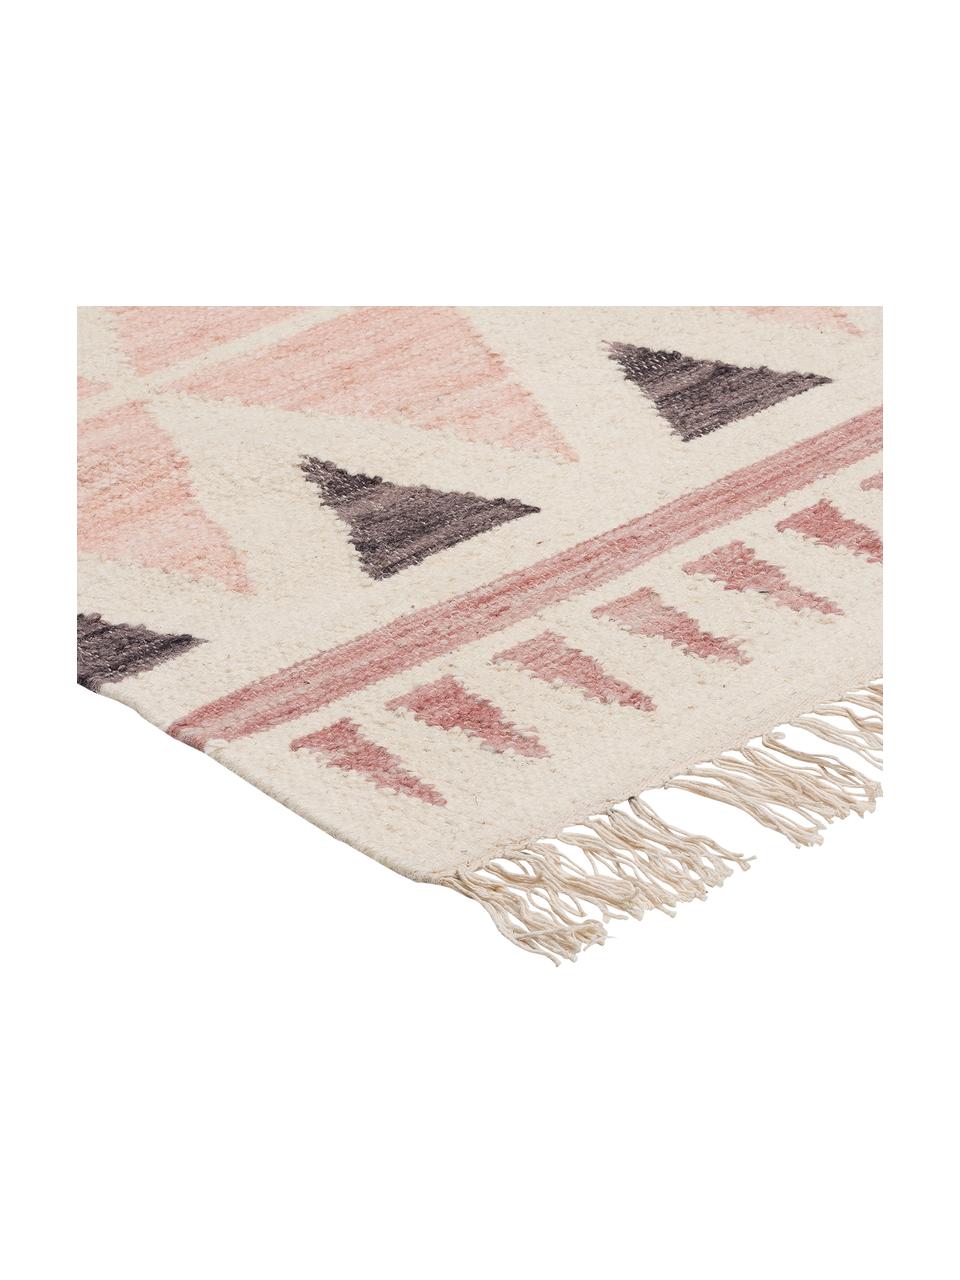 Ručně tkaný vlněný koberec v ethno stylu Billund, Růžová, krémová, tmavě šedá